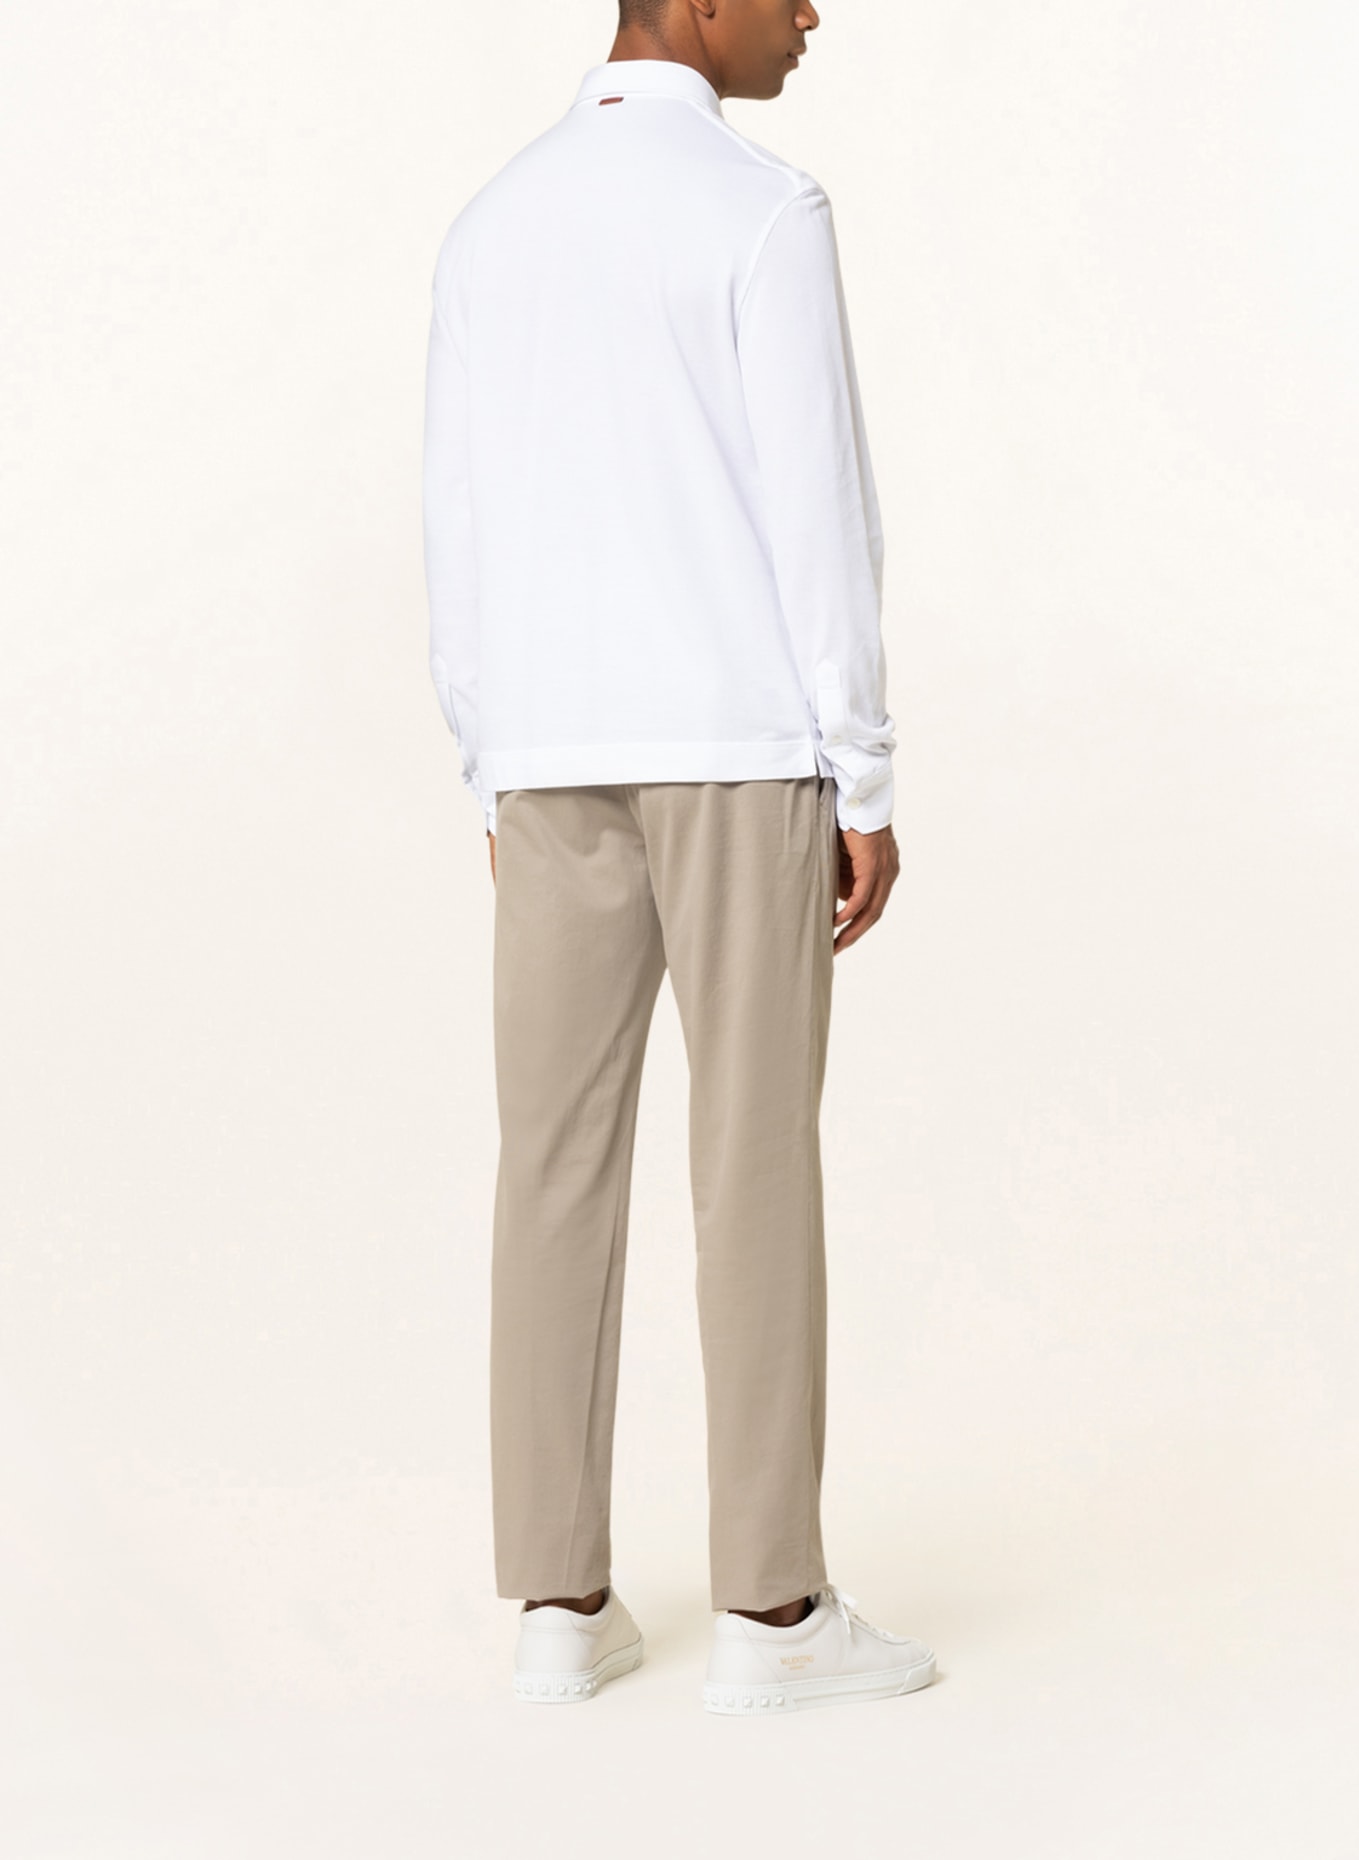 ZEGNA Piqué polo shirt, Color: WHITE (Image 3)